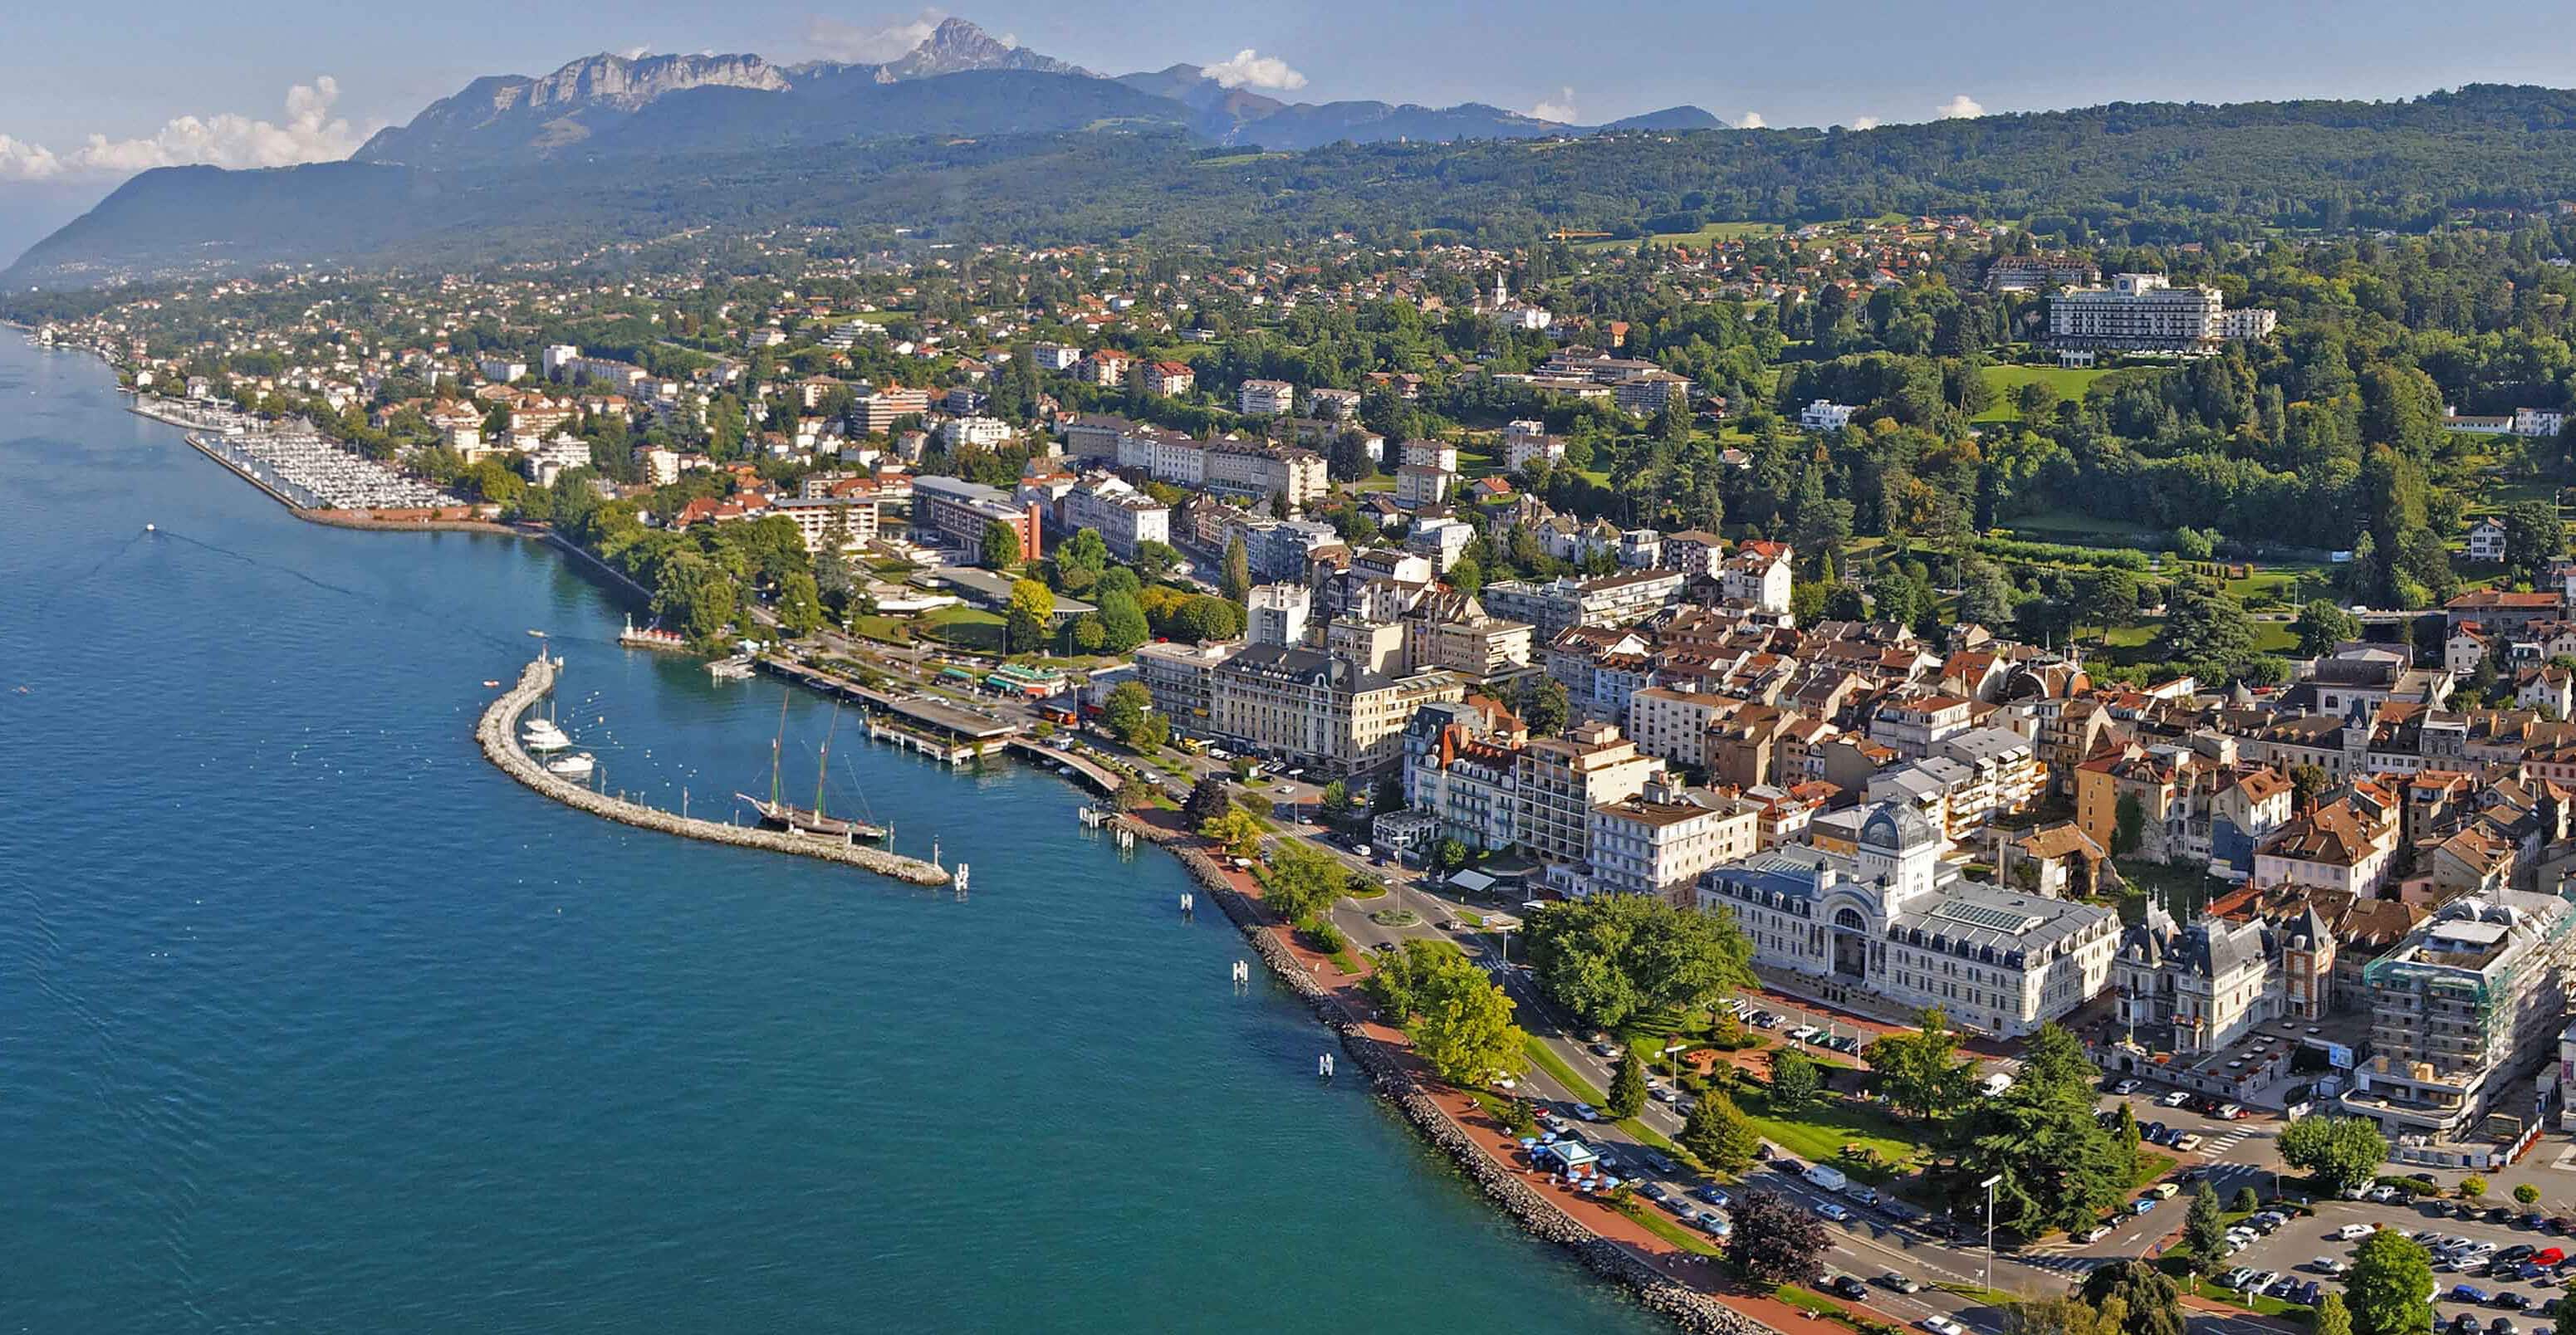 Vue aérienne d'Evian-les-Bains, située au bord du lac Léman